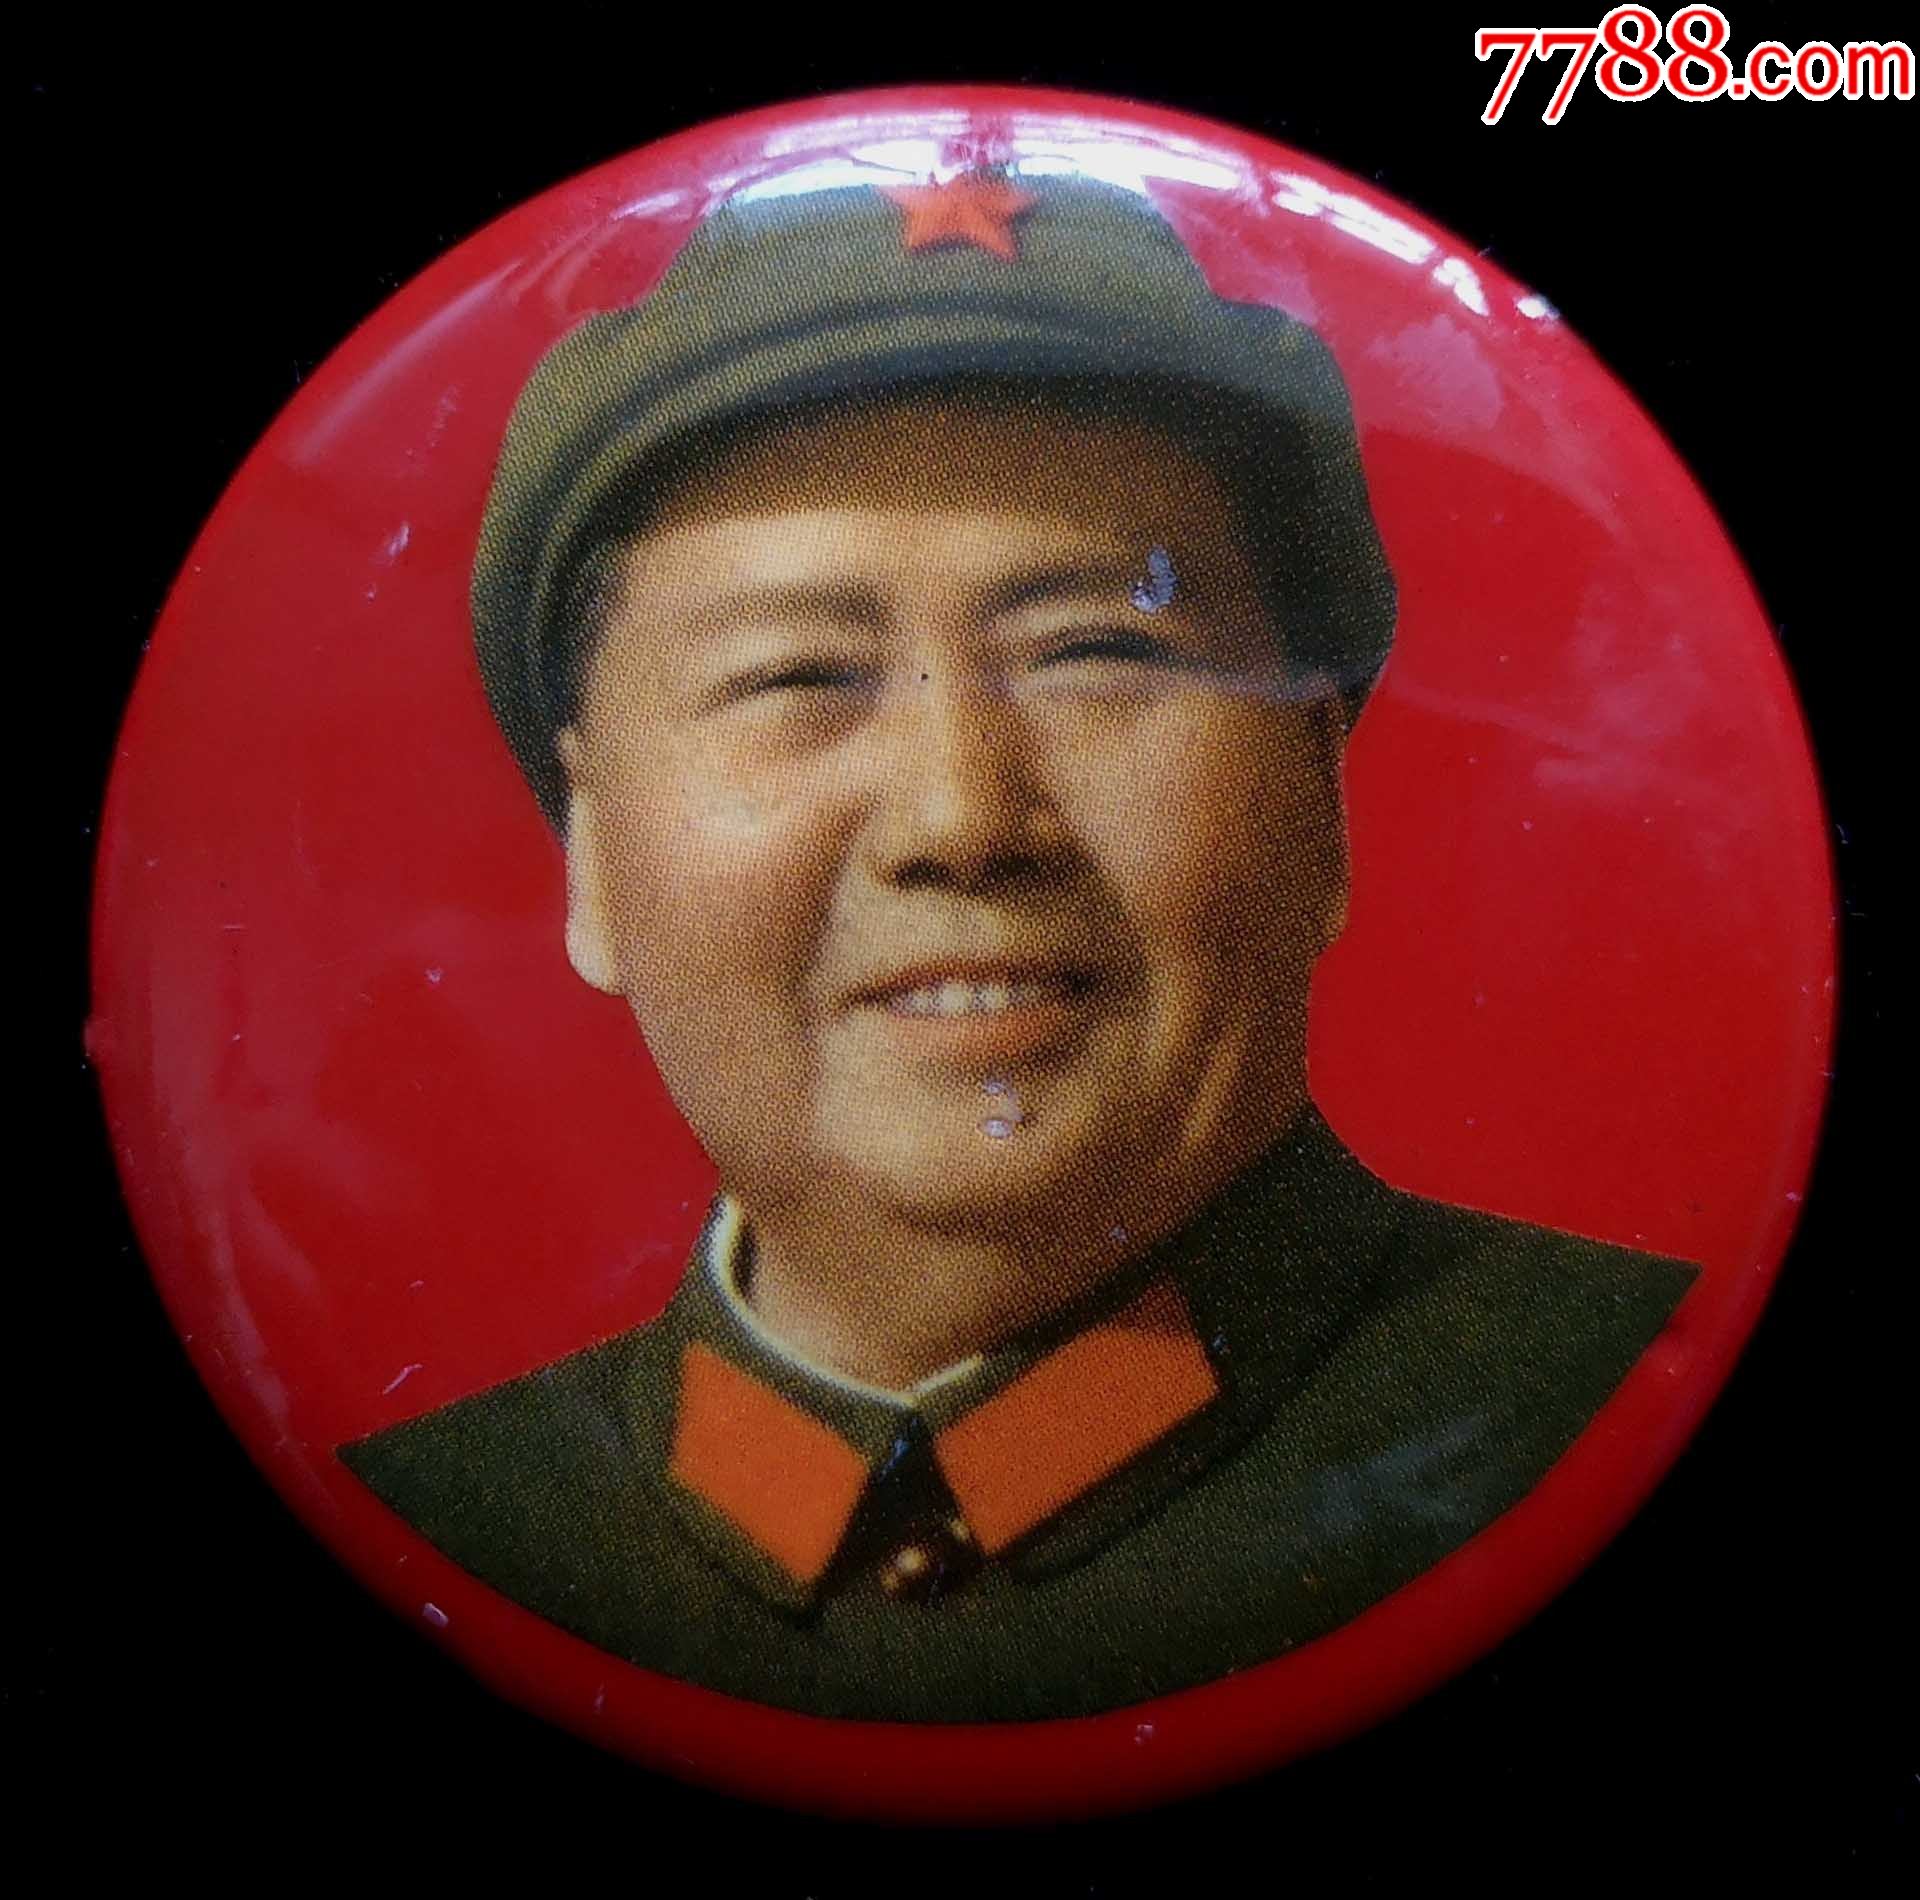 太阳最红毛主席最亲 * 纪念世界伟人毛泽东诞辰122周年* - 灌水专区 - 华声论坛